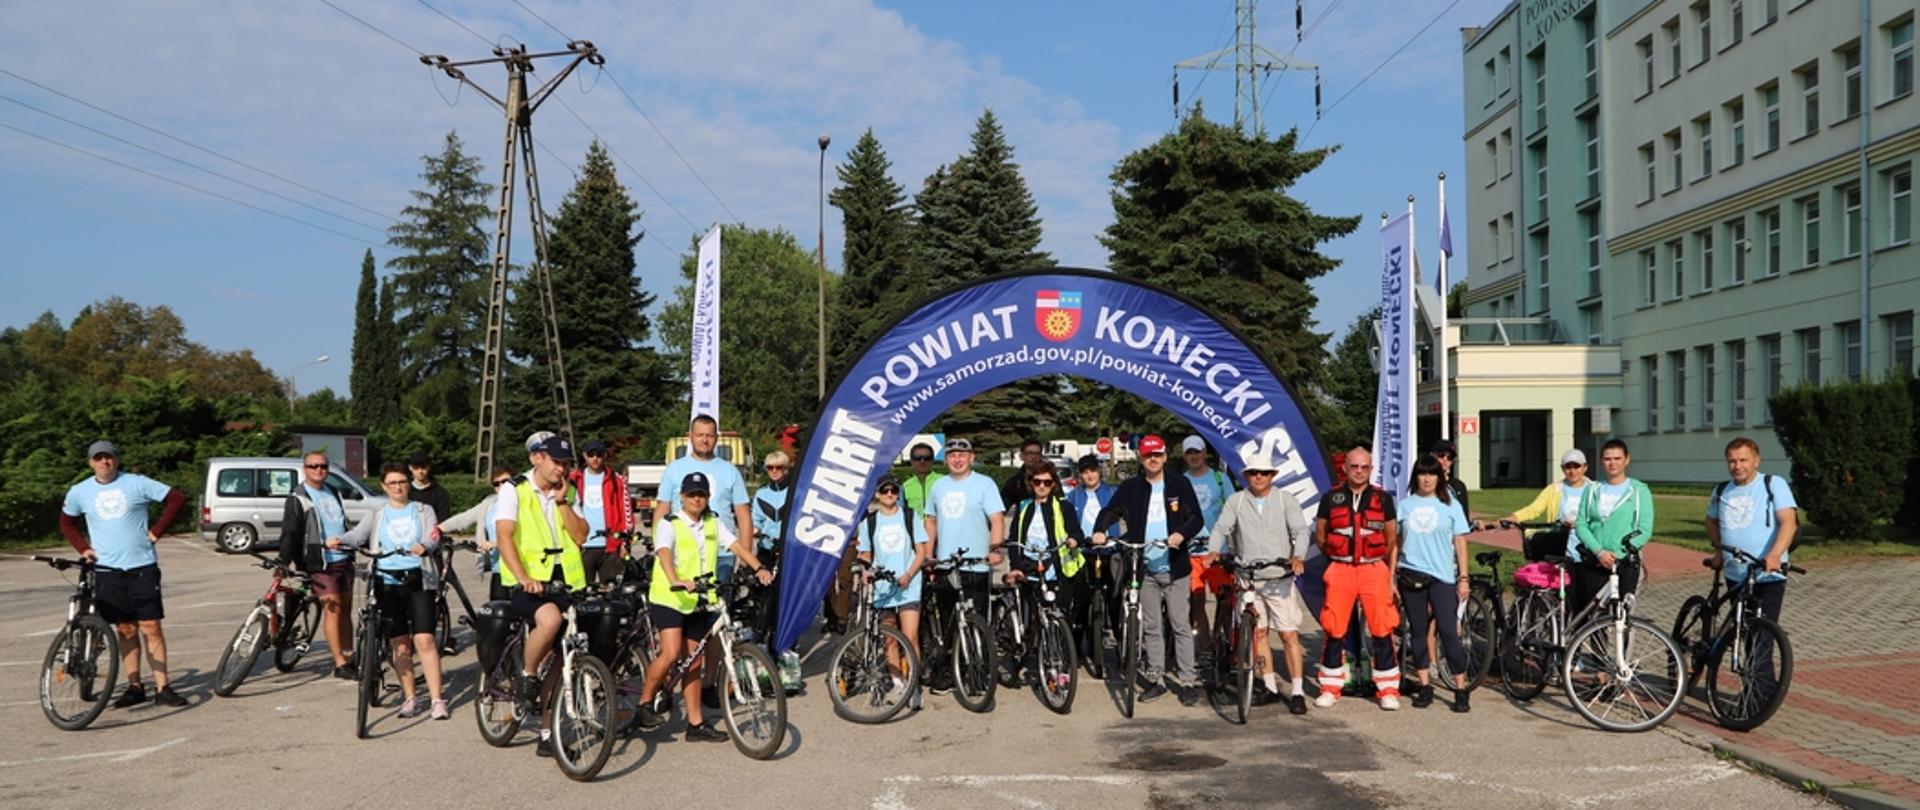 III Rajd zdjęcie grupowe koneckich rowerzystów biorących udział w rajdzieRowerowy Szlakiem Brygady Świętokrzyskiej Narodowych Sił Zbrojnych